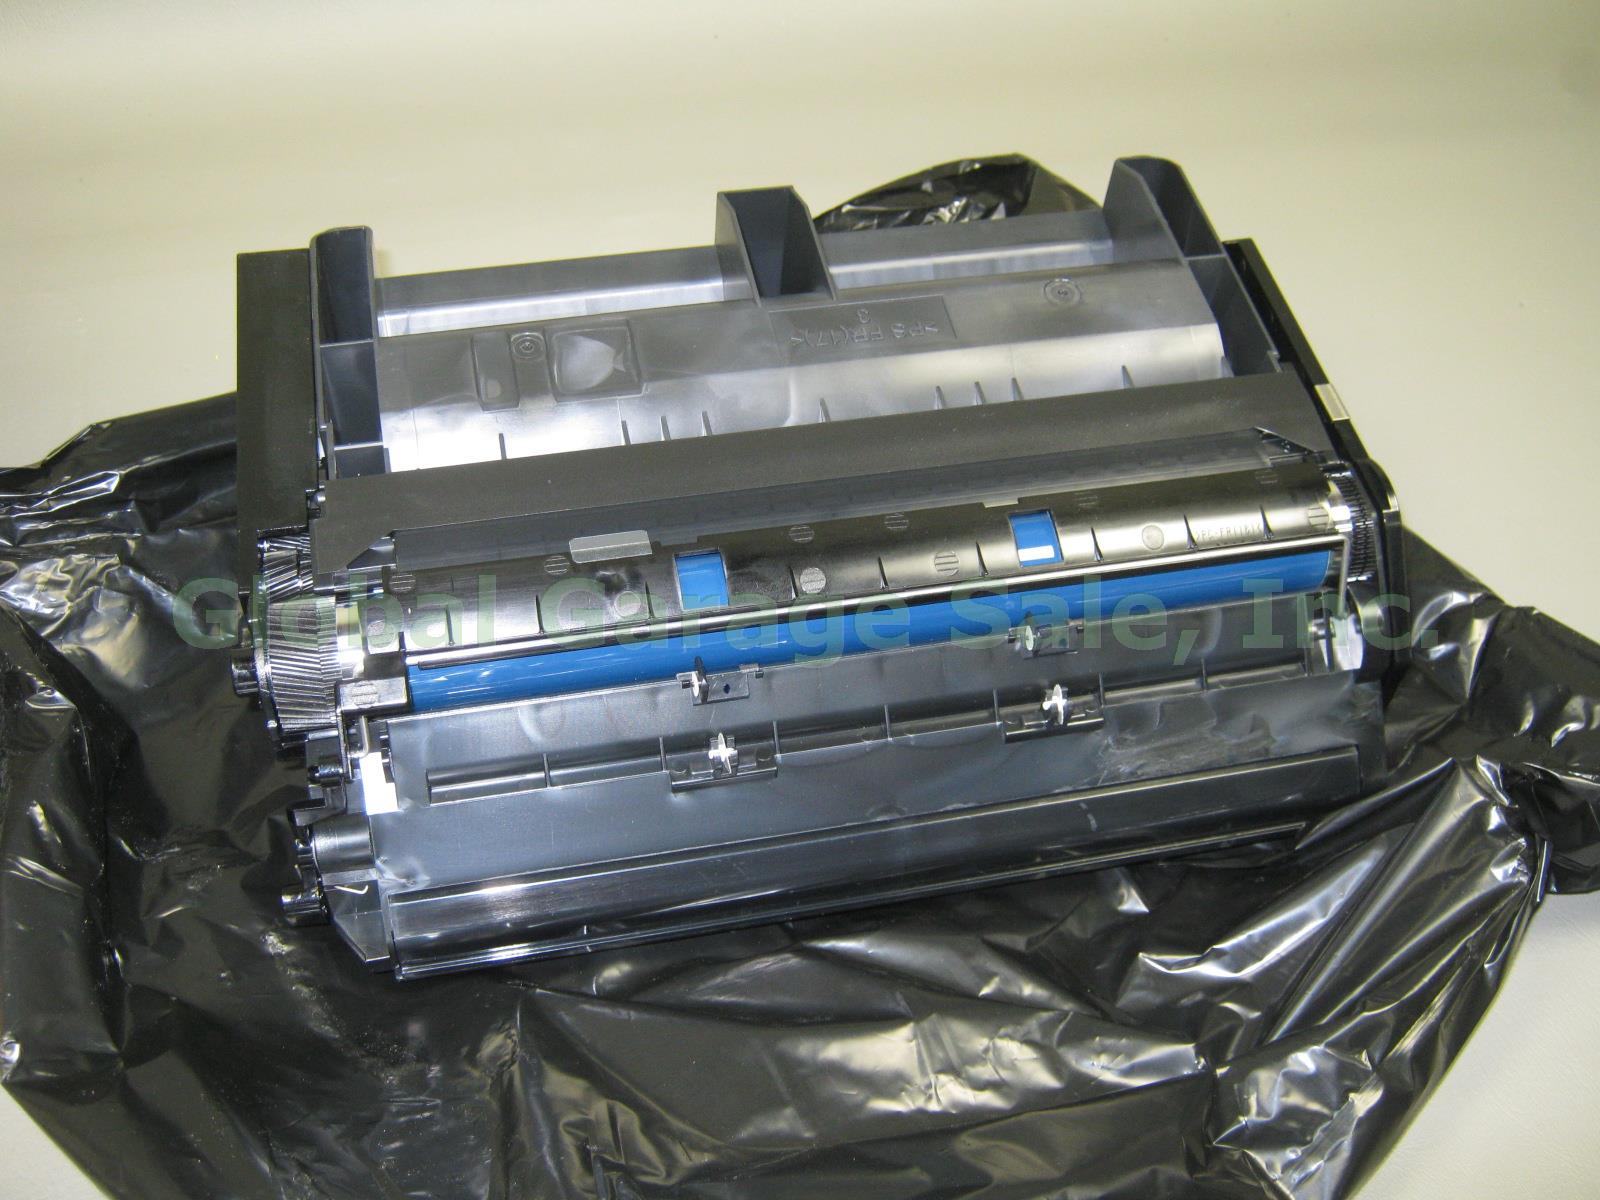 Ricoh Print Cartridge SP4100 Type 120 Black M889-17 406997 For SP 4100N 4110N NR 4